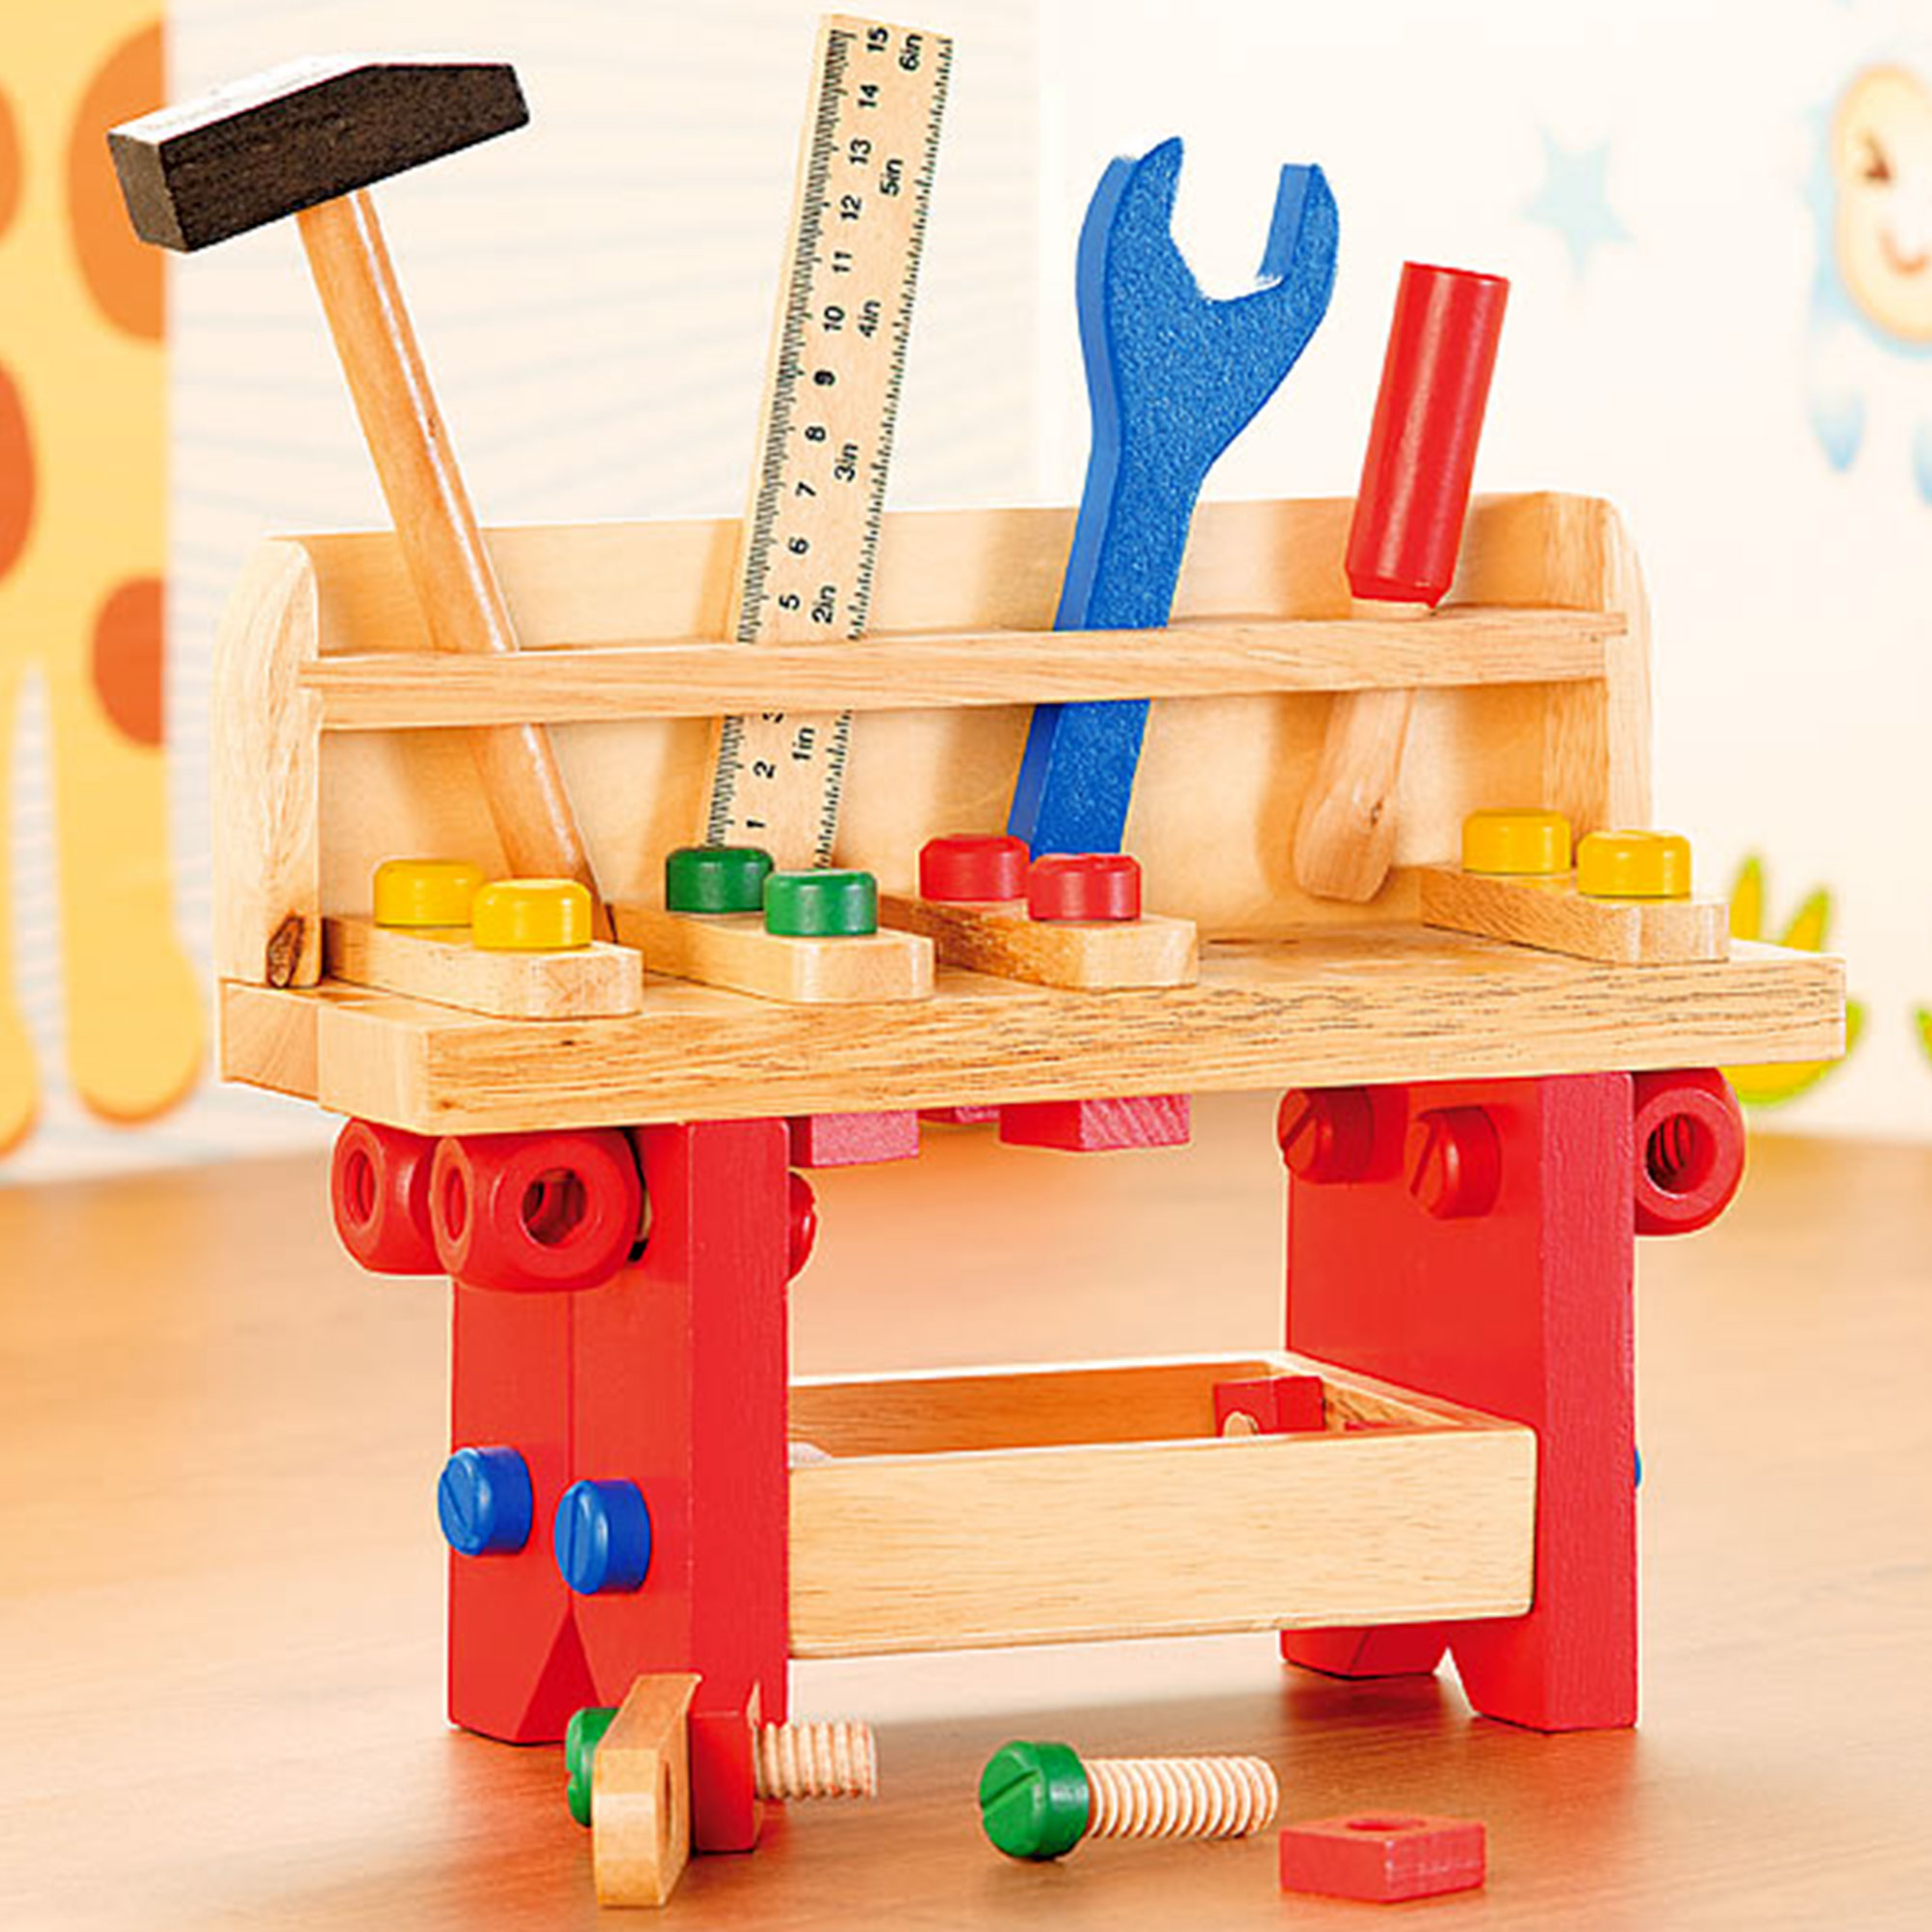 Kinder Werkbank aus Holz, Kinder Werktisch mit 51 Zubehörteilen, Kleine Kinder-Werkzeugbank zum Spielen, Werkstatttisch mit Kinderwerkzeug